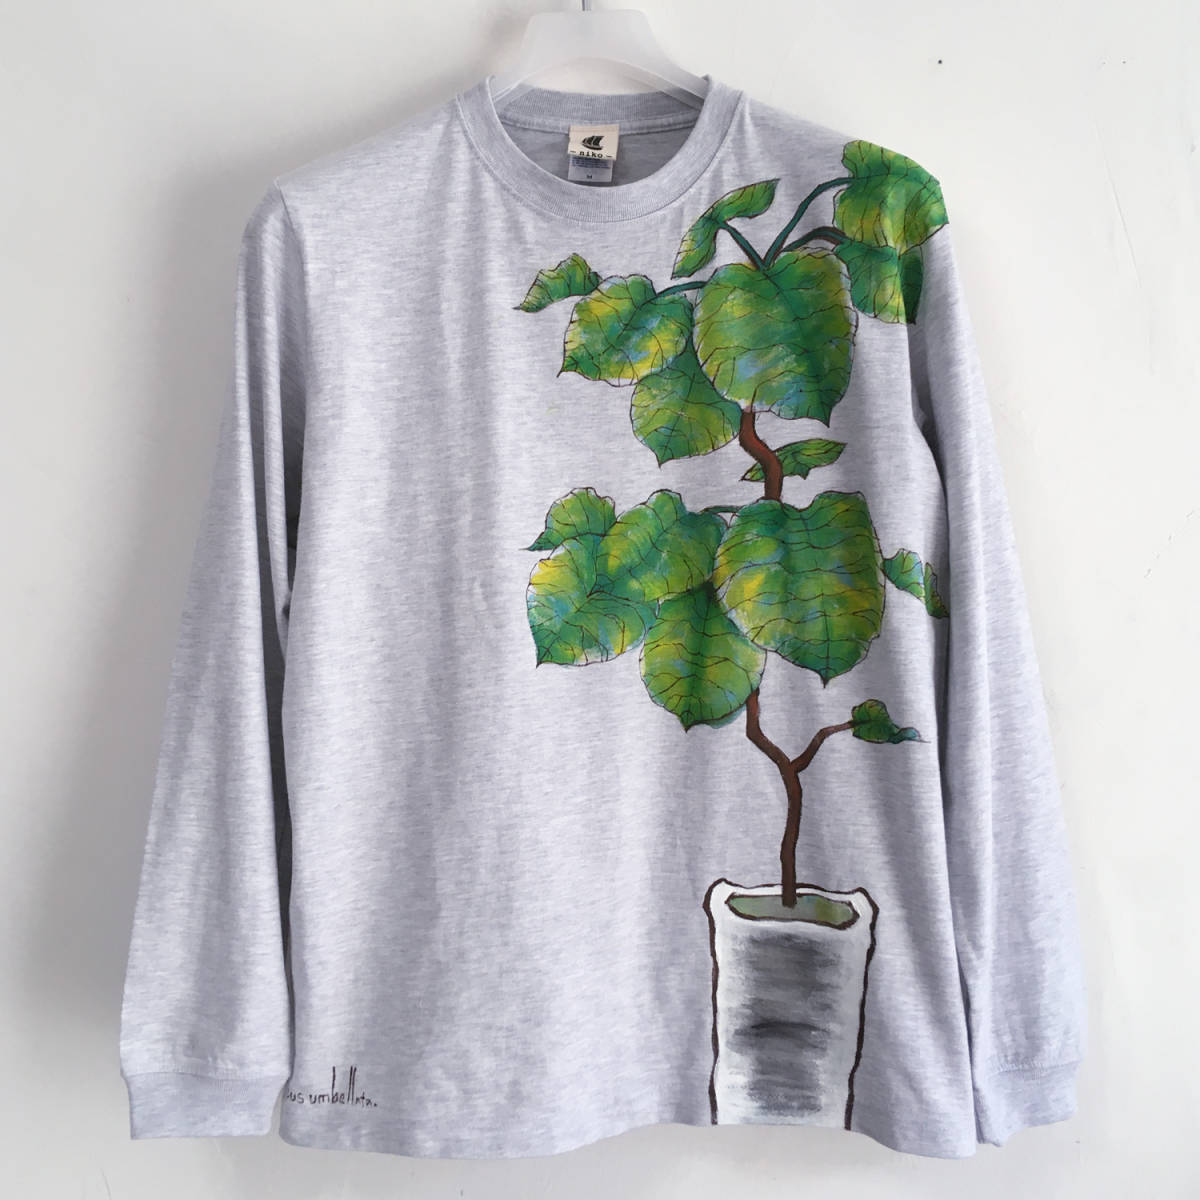 Handbemaltes, geripptes langes T-Shirt mit Umbellata-Muster, langen Ärmeln, botanisches Zimmerpflanzen-langes T-Shirt, T-Shirt, lange Ärmel, S-Größe